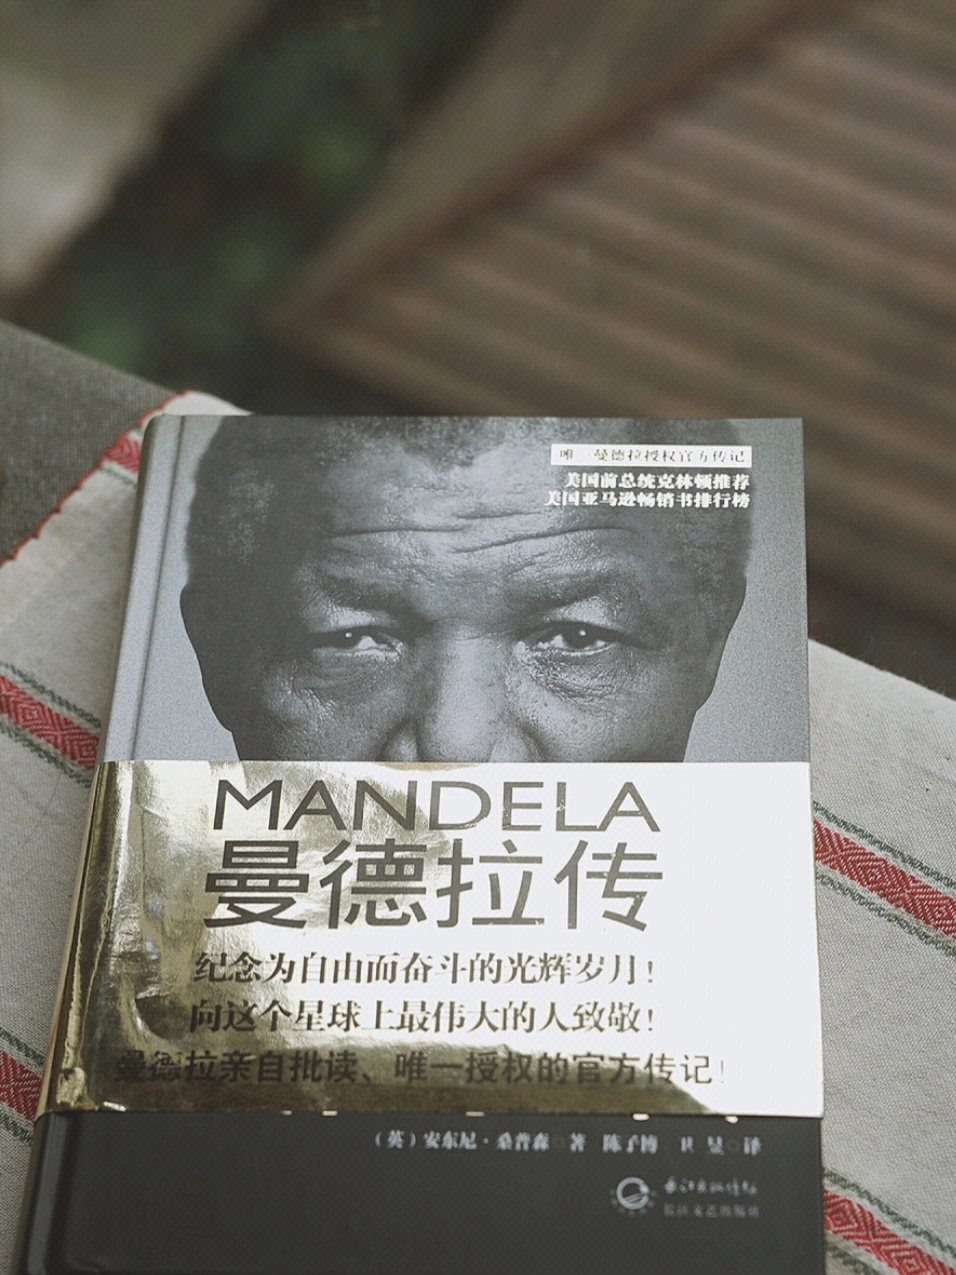 传记《曼德拉》,纪念为自由而奋斗的光辉岁月